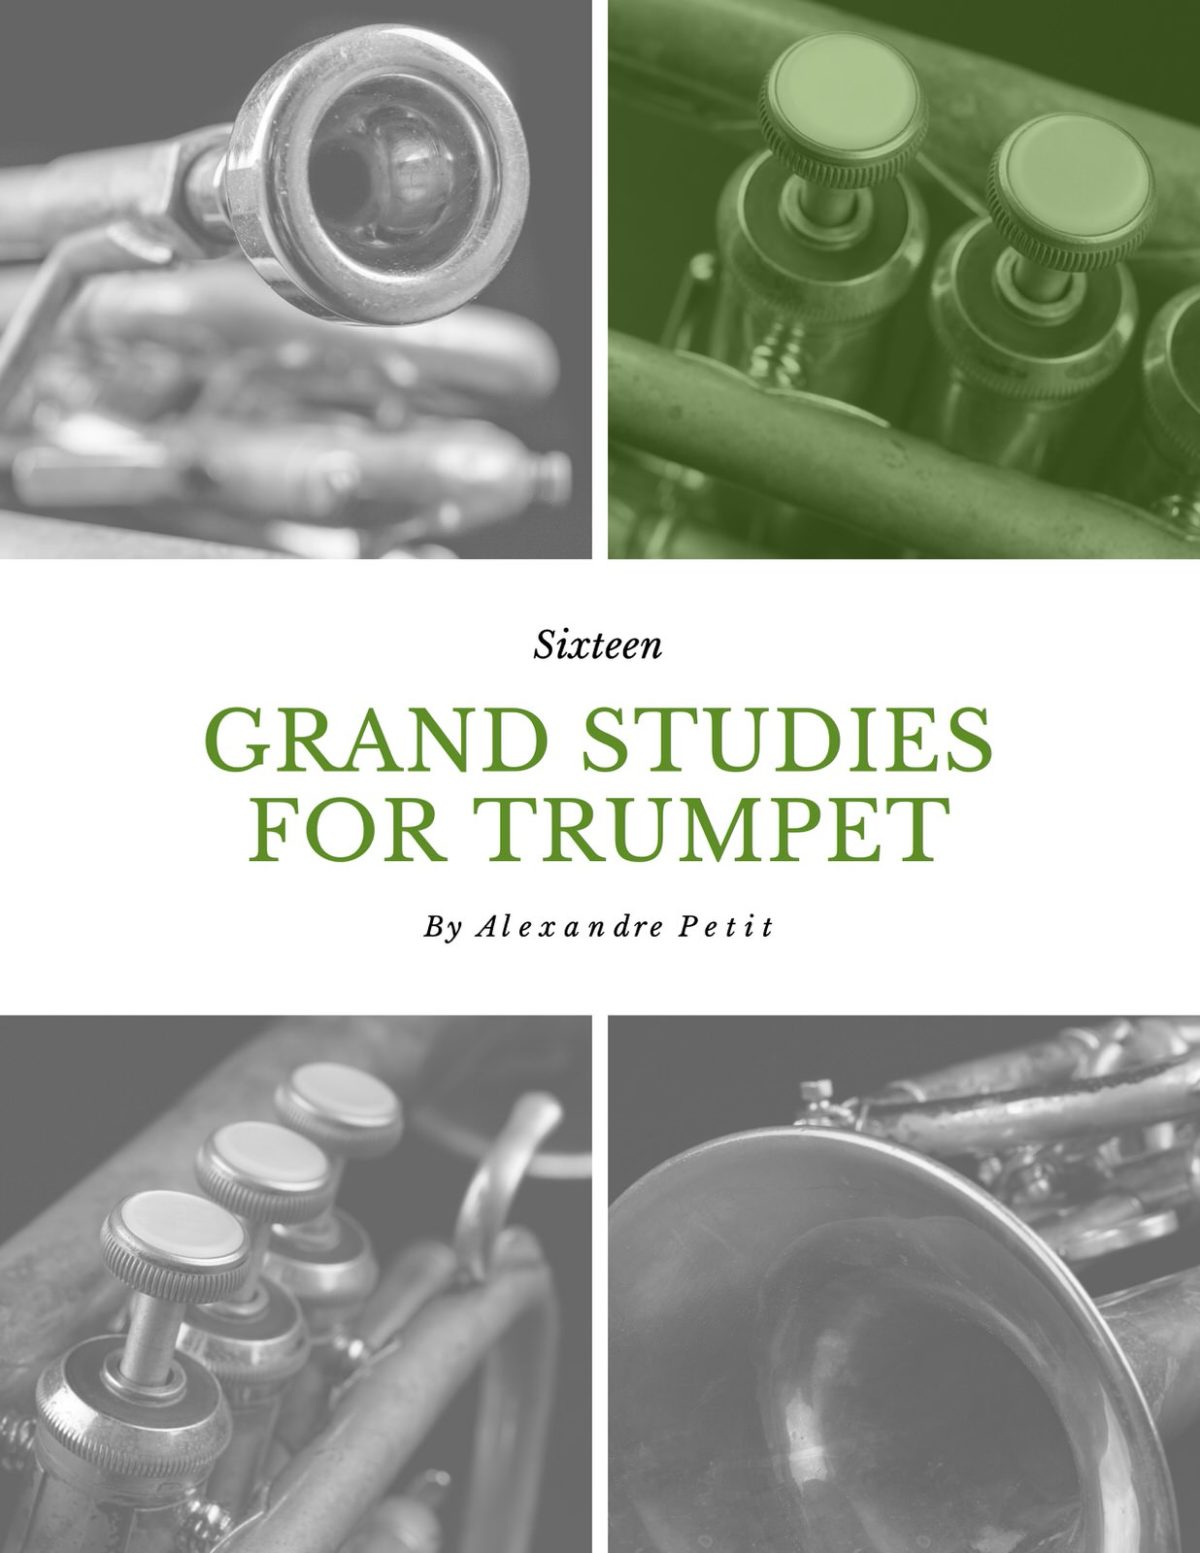 16 Grand Studies